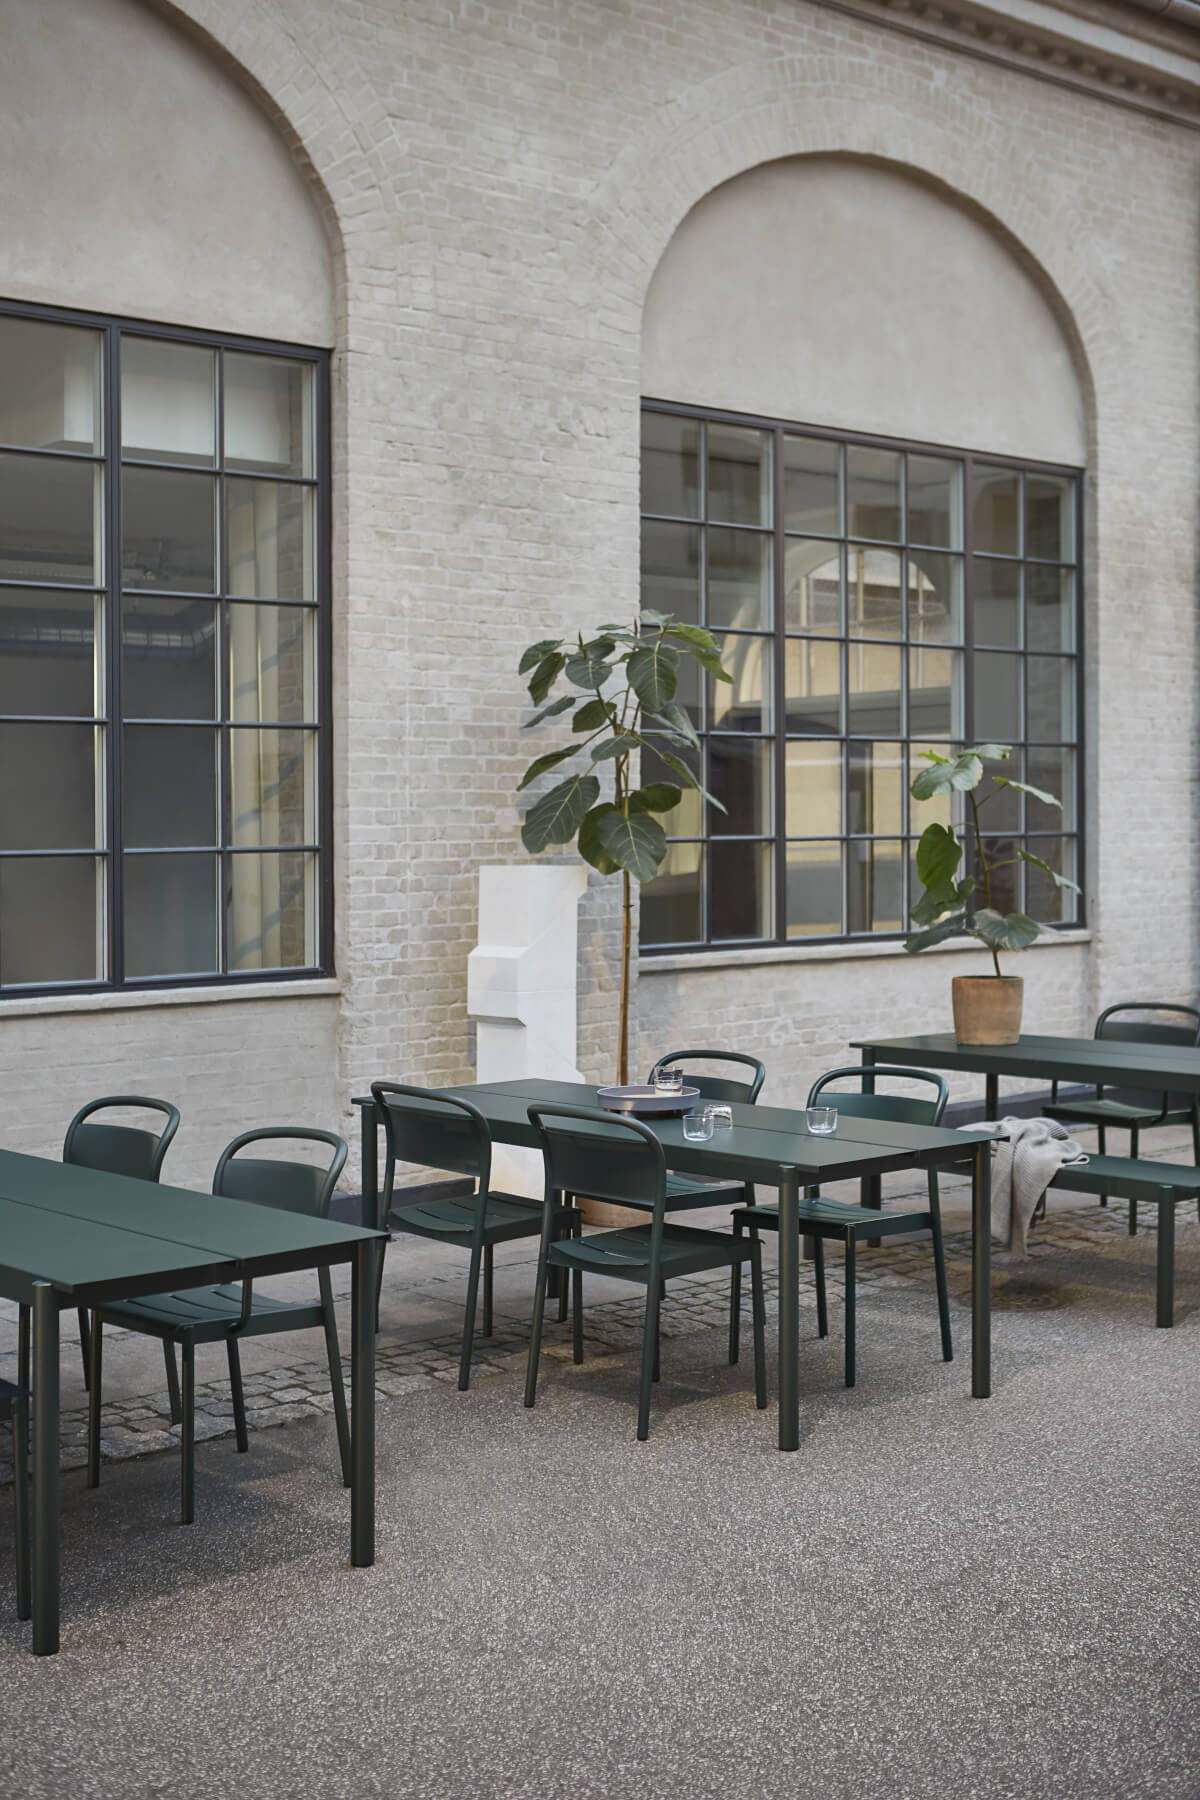 Linear Steel Gartentisch, 200 x 75 cm, dunkelgrün